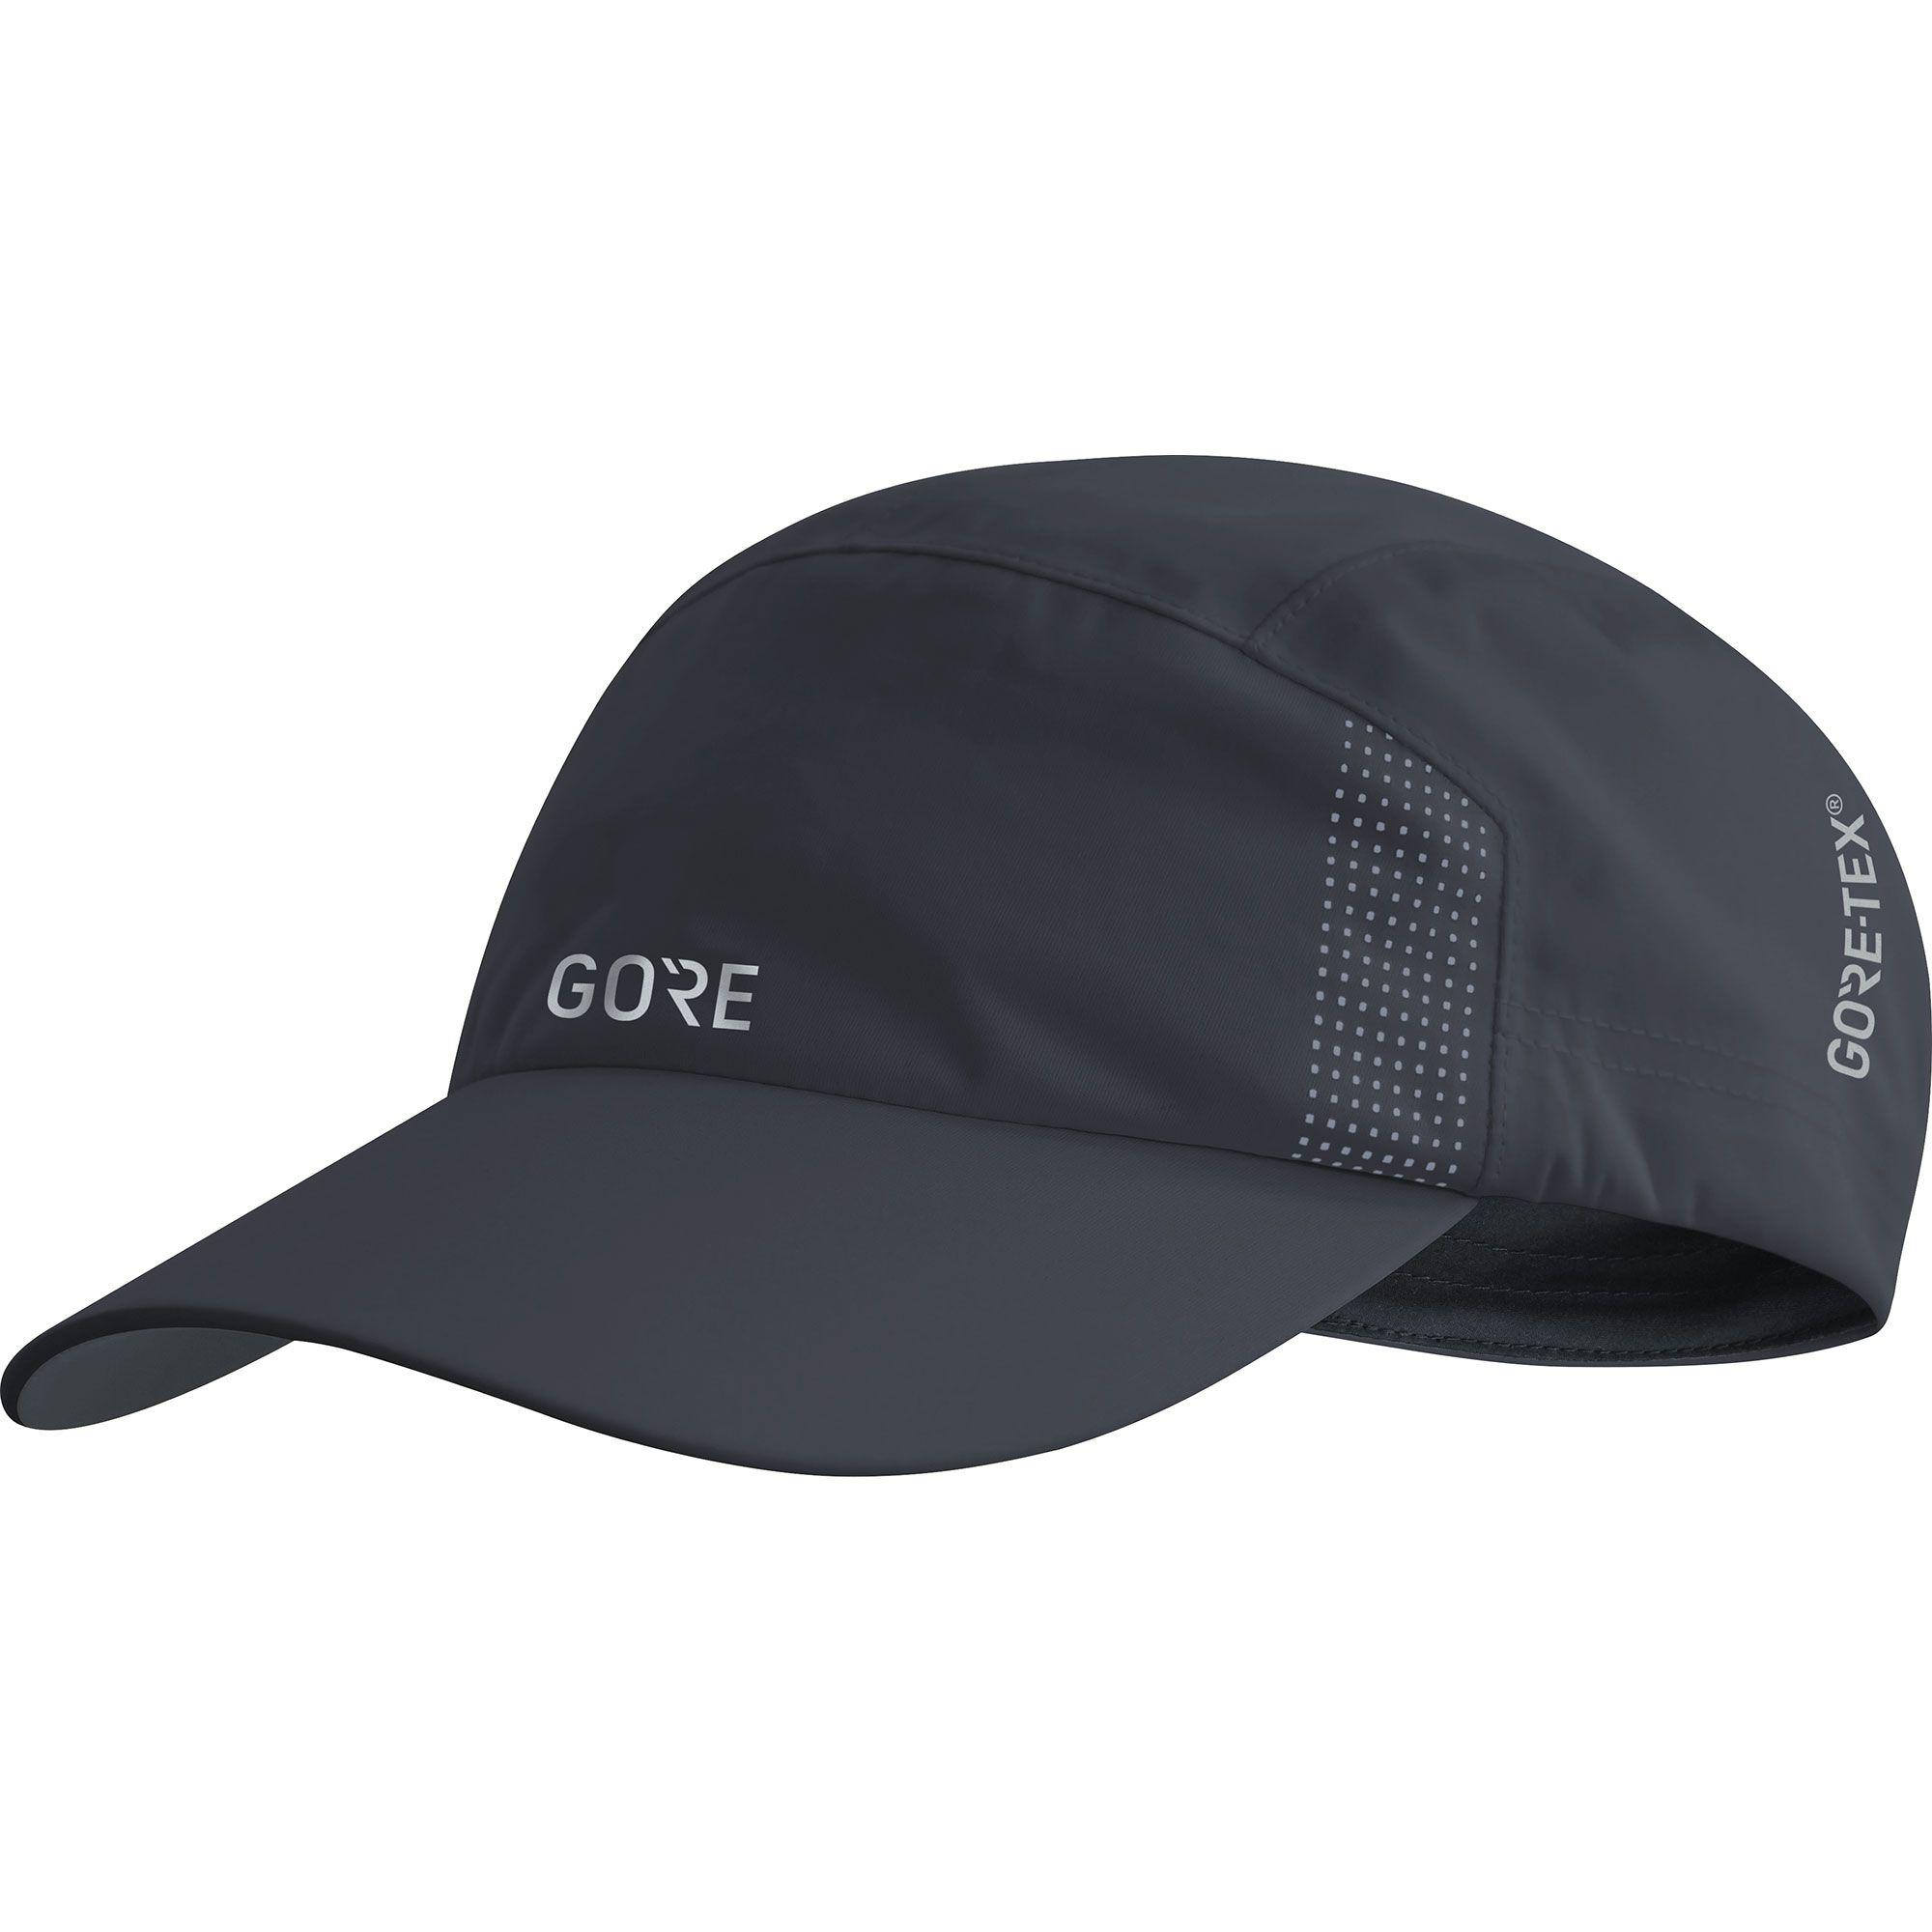 Gortex Logo - Wiggle | Gore Wear GORE-TEX® Cap | Caps